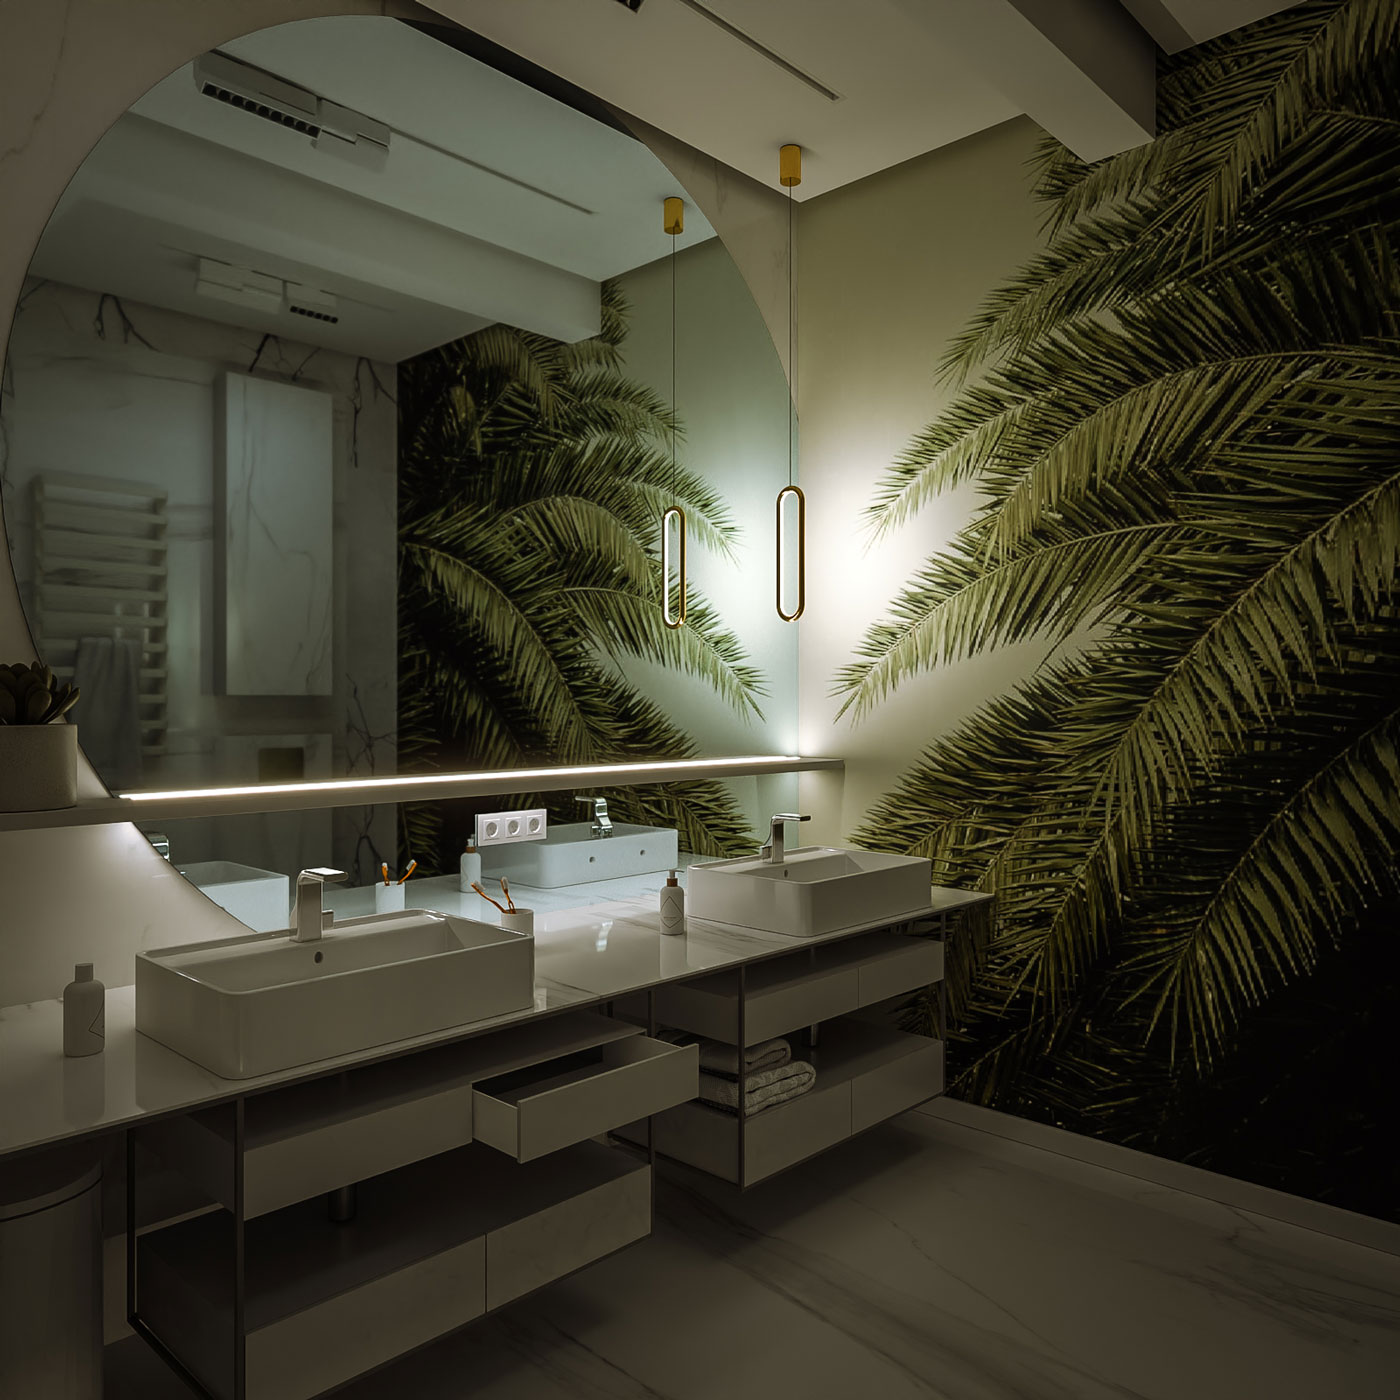 Bathroom visualization - Bitopia 3D Architectural Visualization Studio